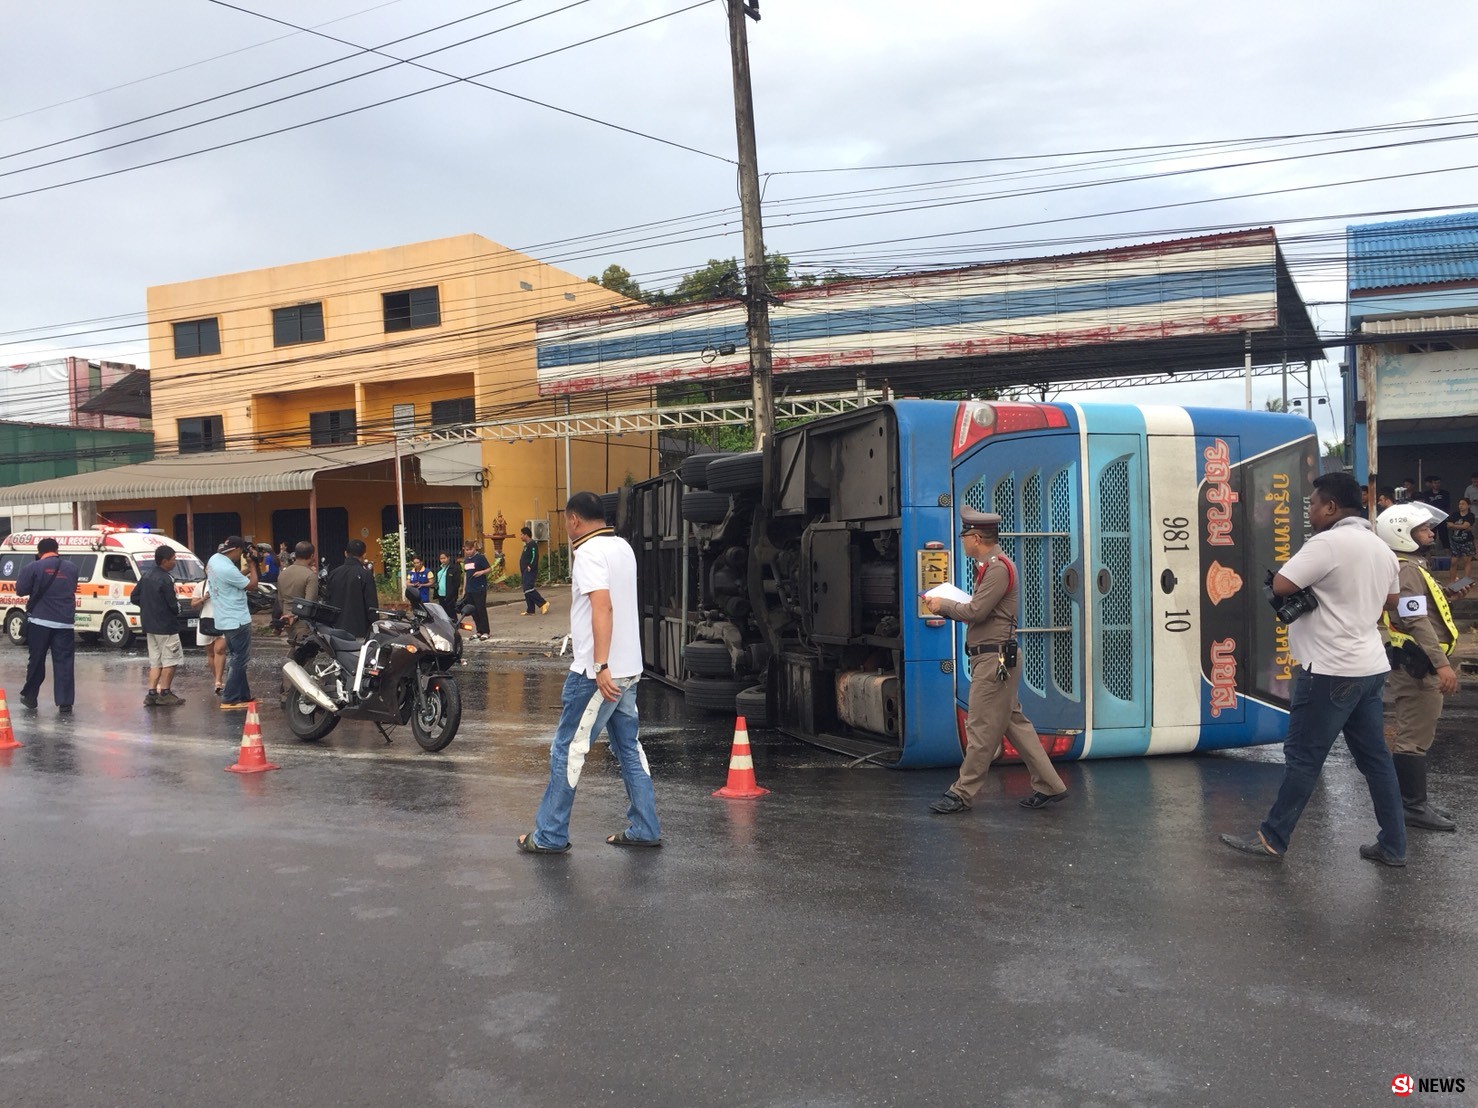 คว่ำรับเช้าเข้าพรรษา-รถทัวร์วิ่งฝ่าฝนท้ายปัดล้มตะแคงขวางถนน ทำผู้โดยสารเจ็บกว่า 20 ราย